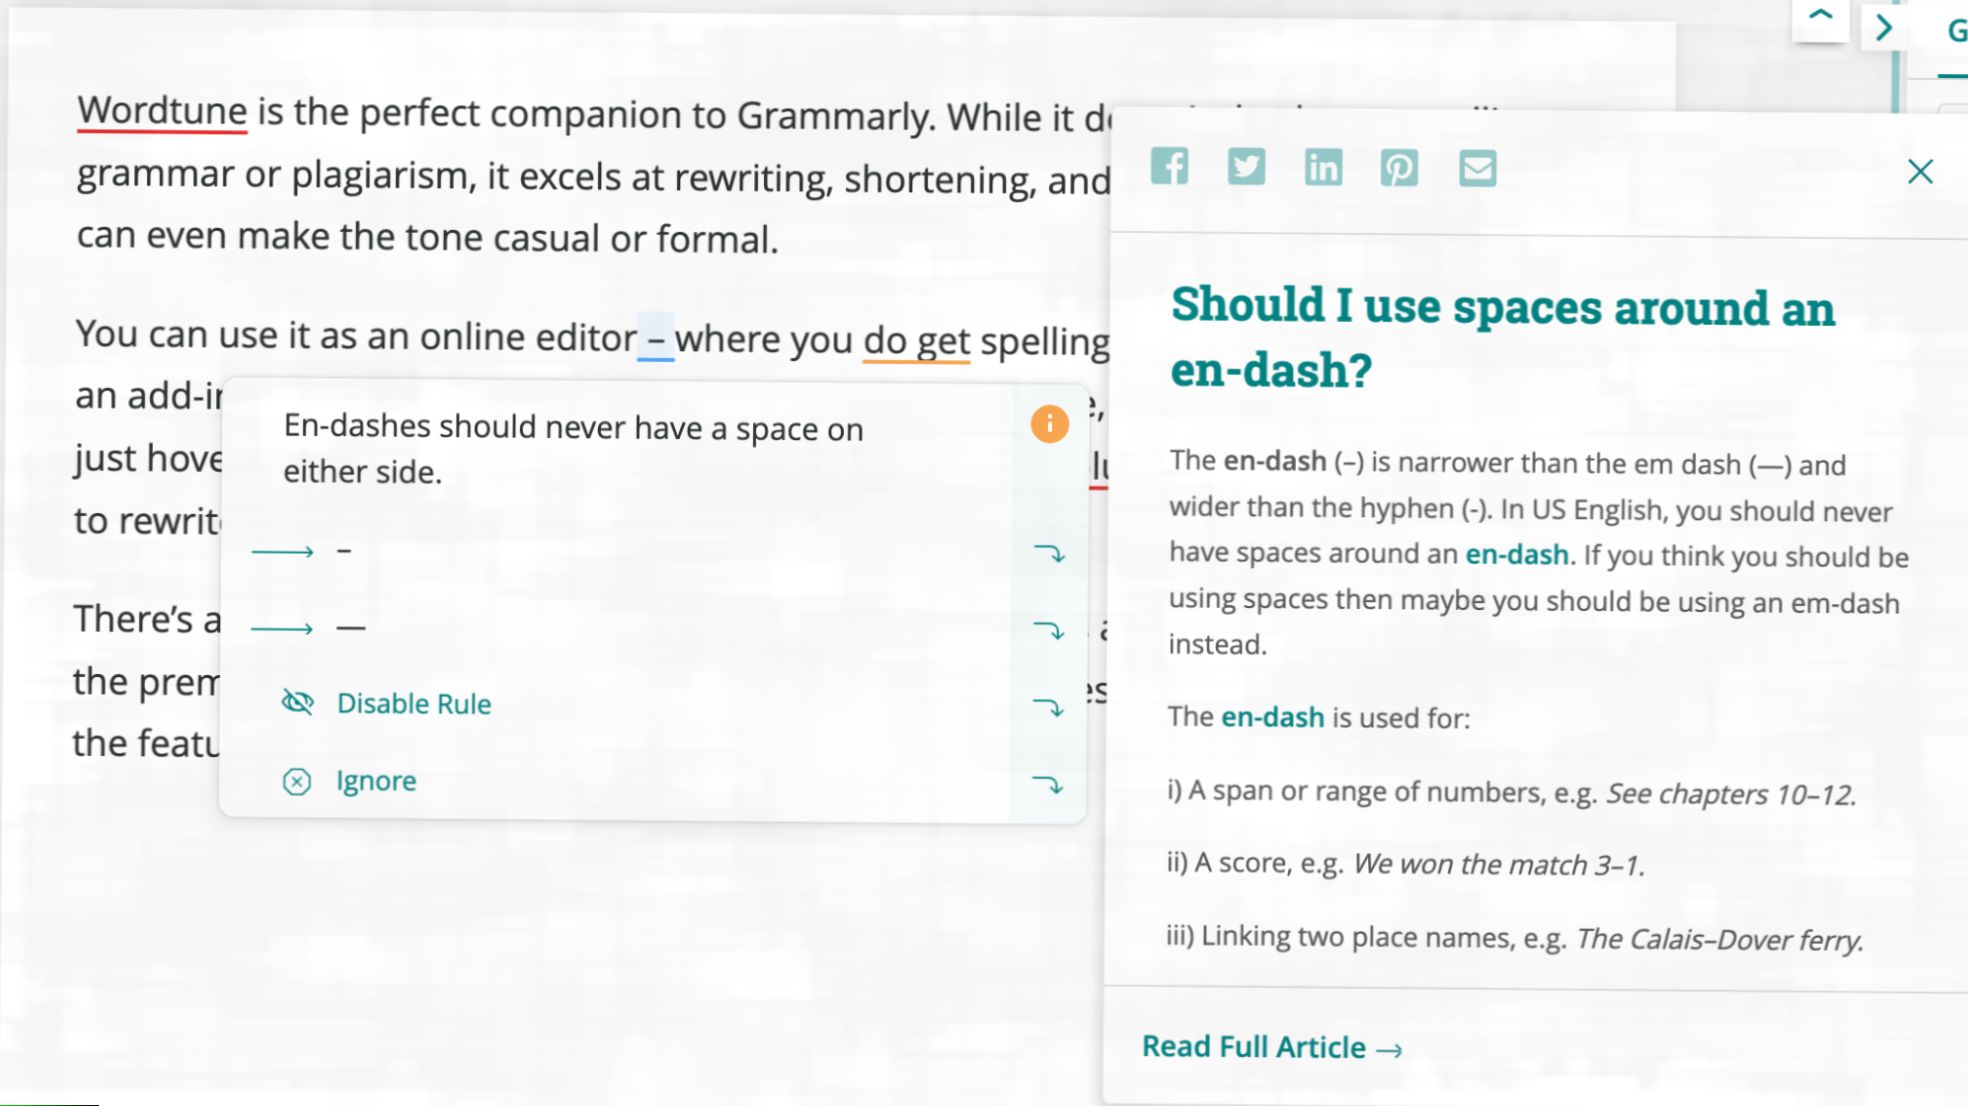 El corrector gramatical AI de Wortune le dice al usuario que los guiones no deben tener espacios en ninguno de los lados